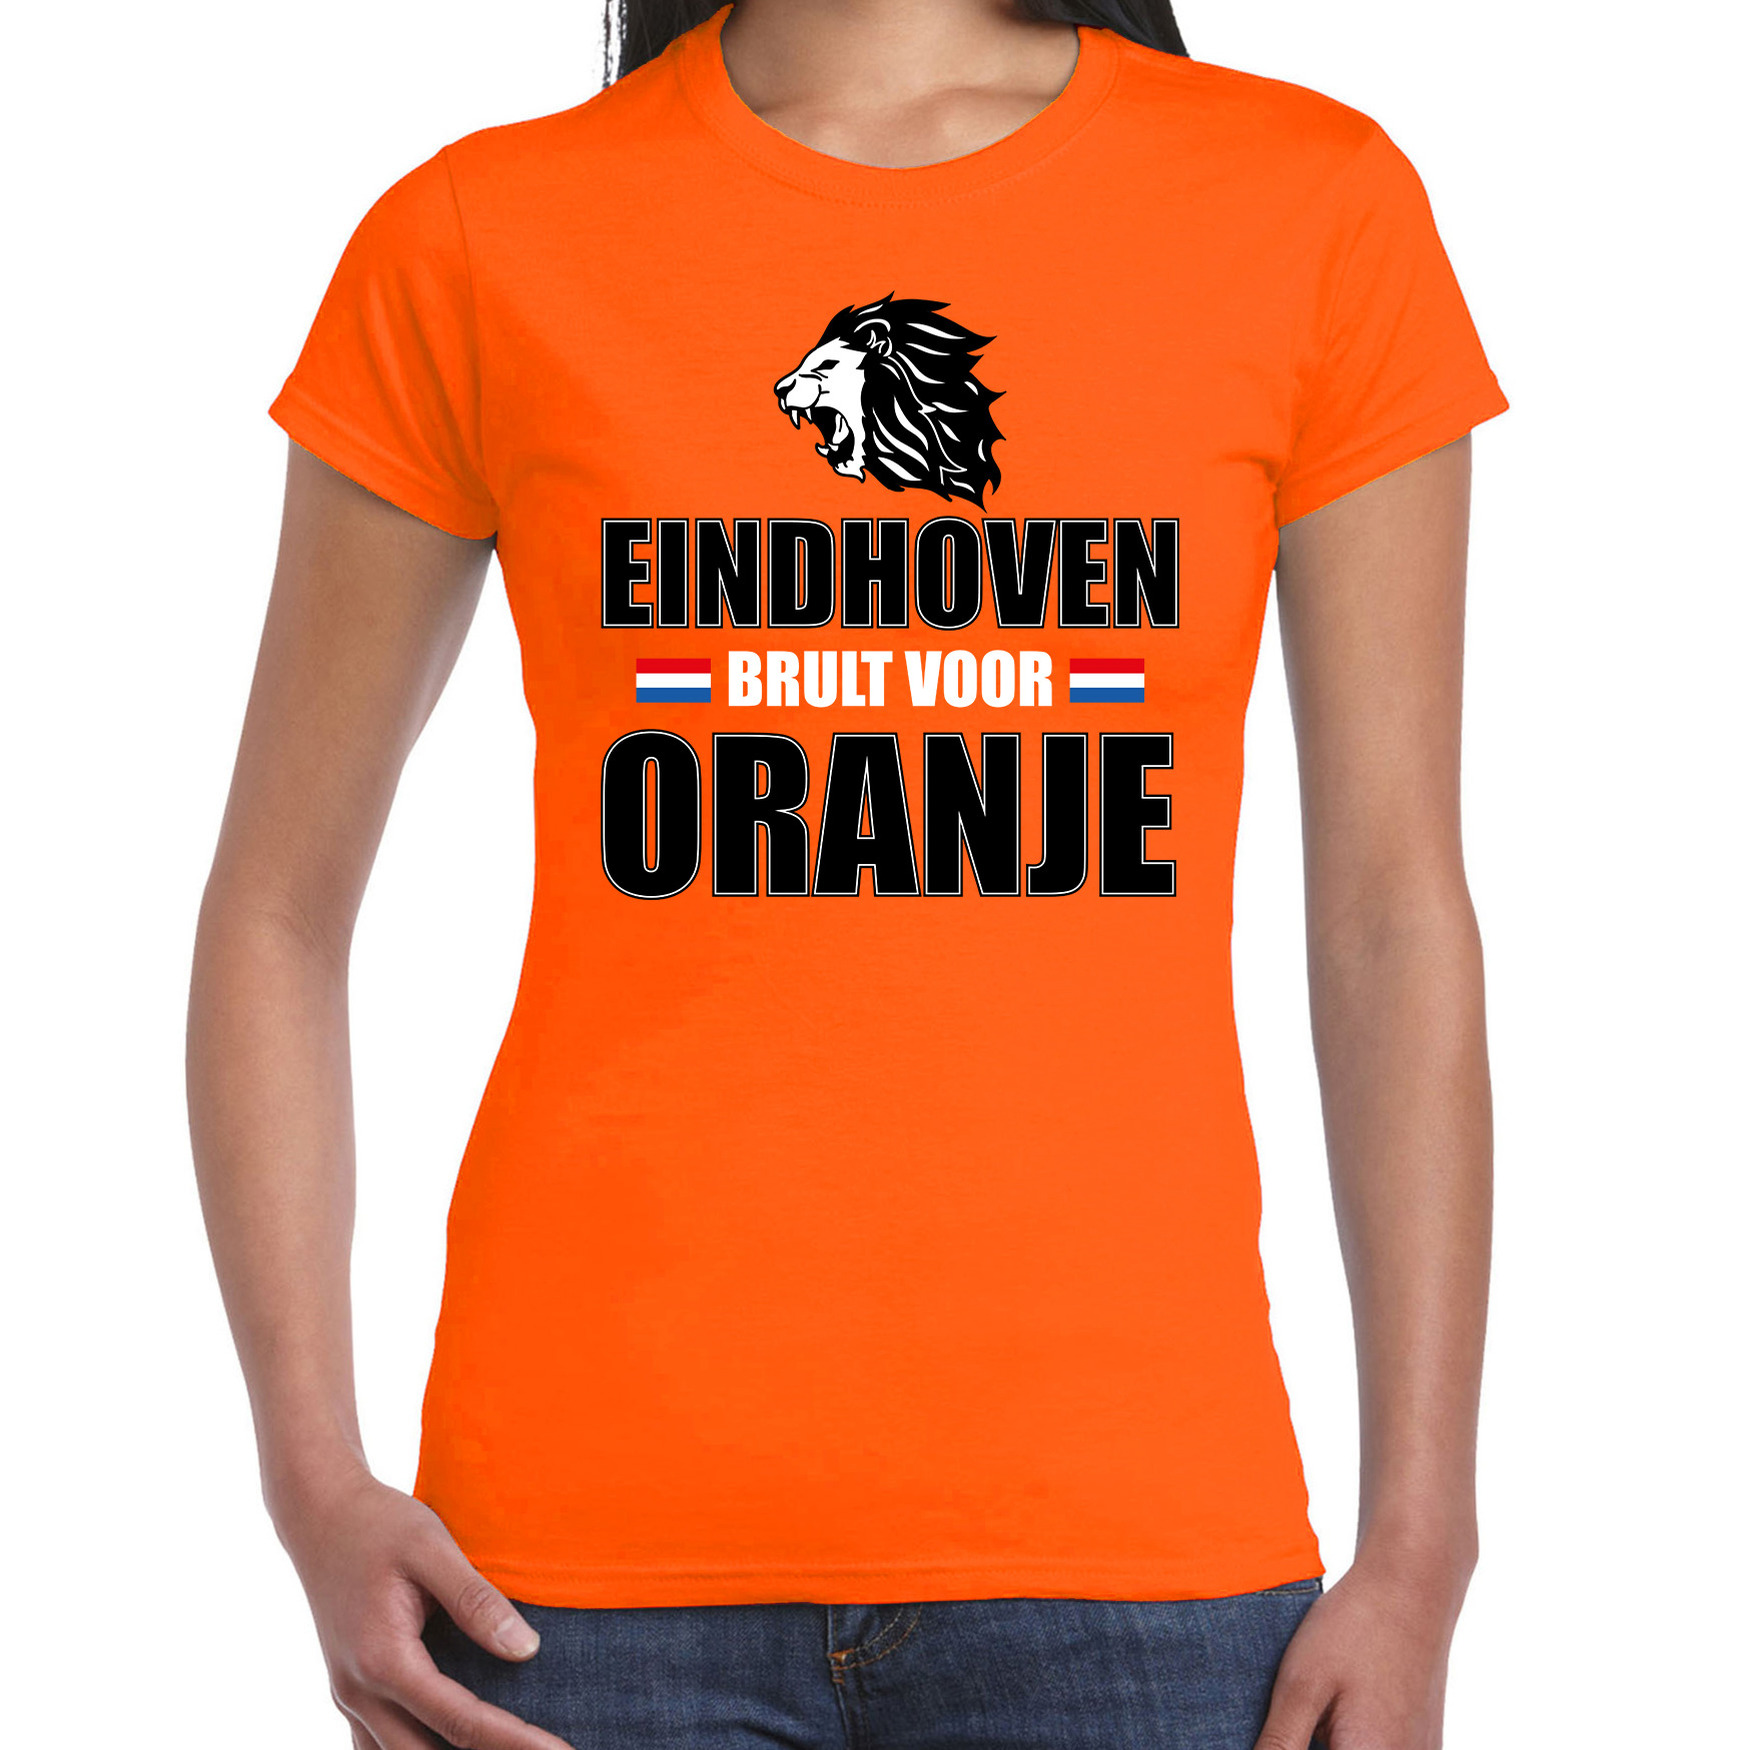 Oranje t-shirt Eindhoven brult voor oranje dames Holland-Nederland supporter shirt EK- WK